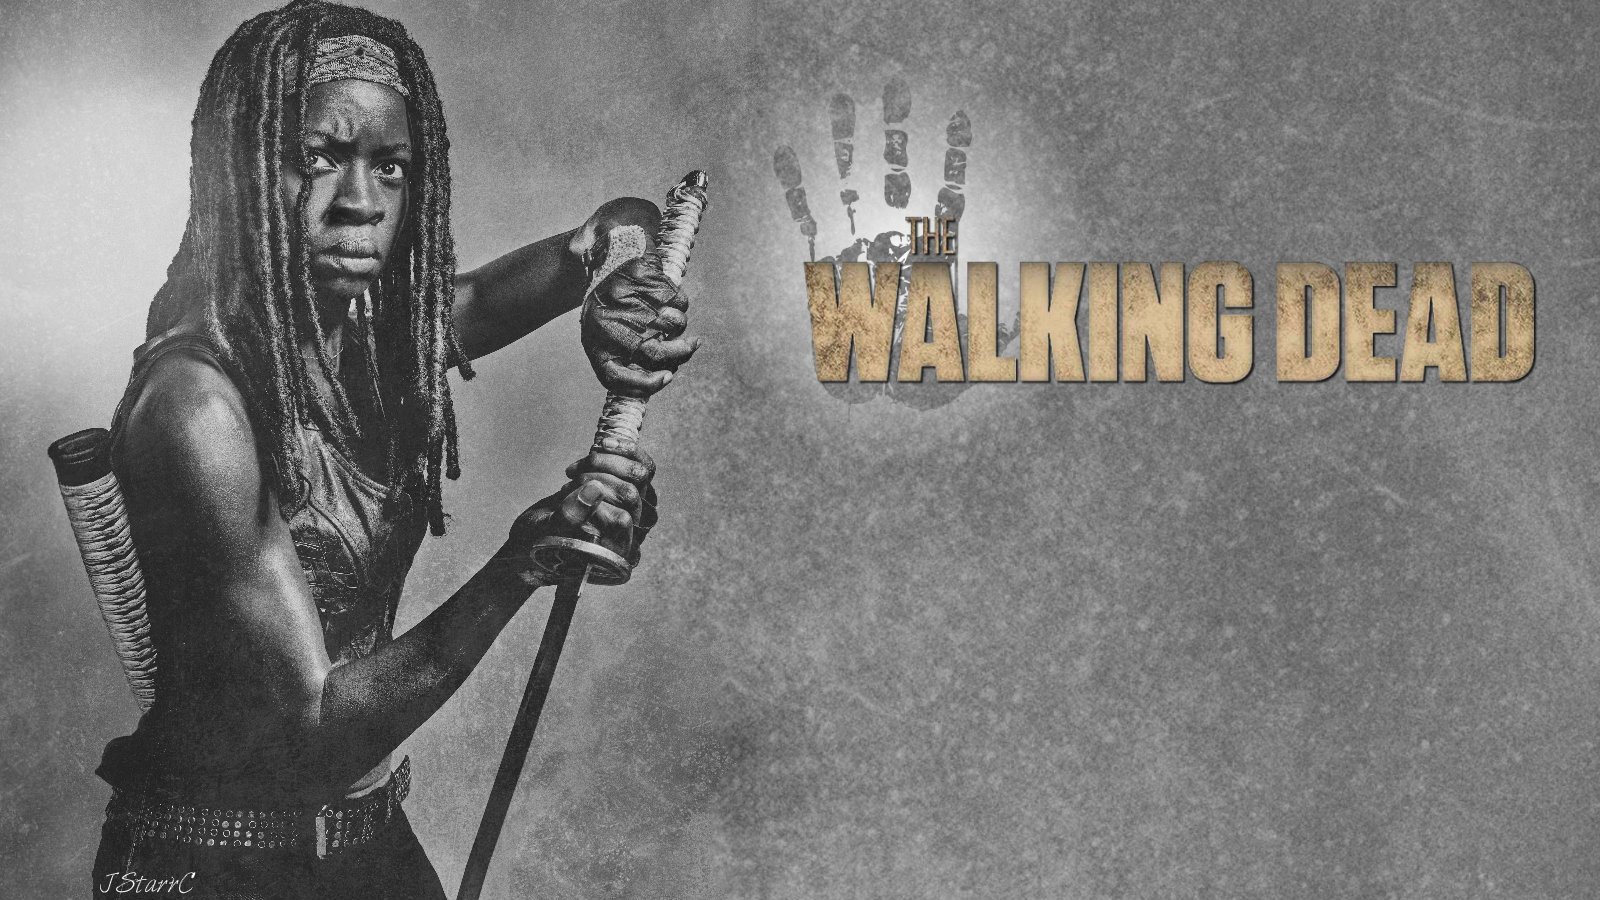 The Walking Dead: Michonne Wallpapers